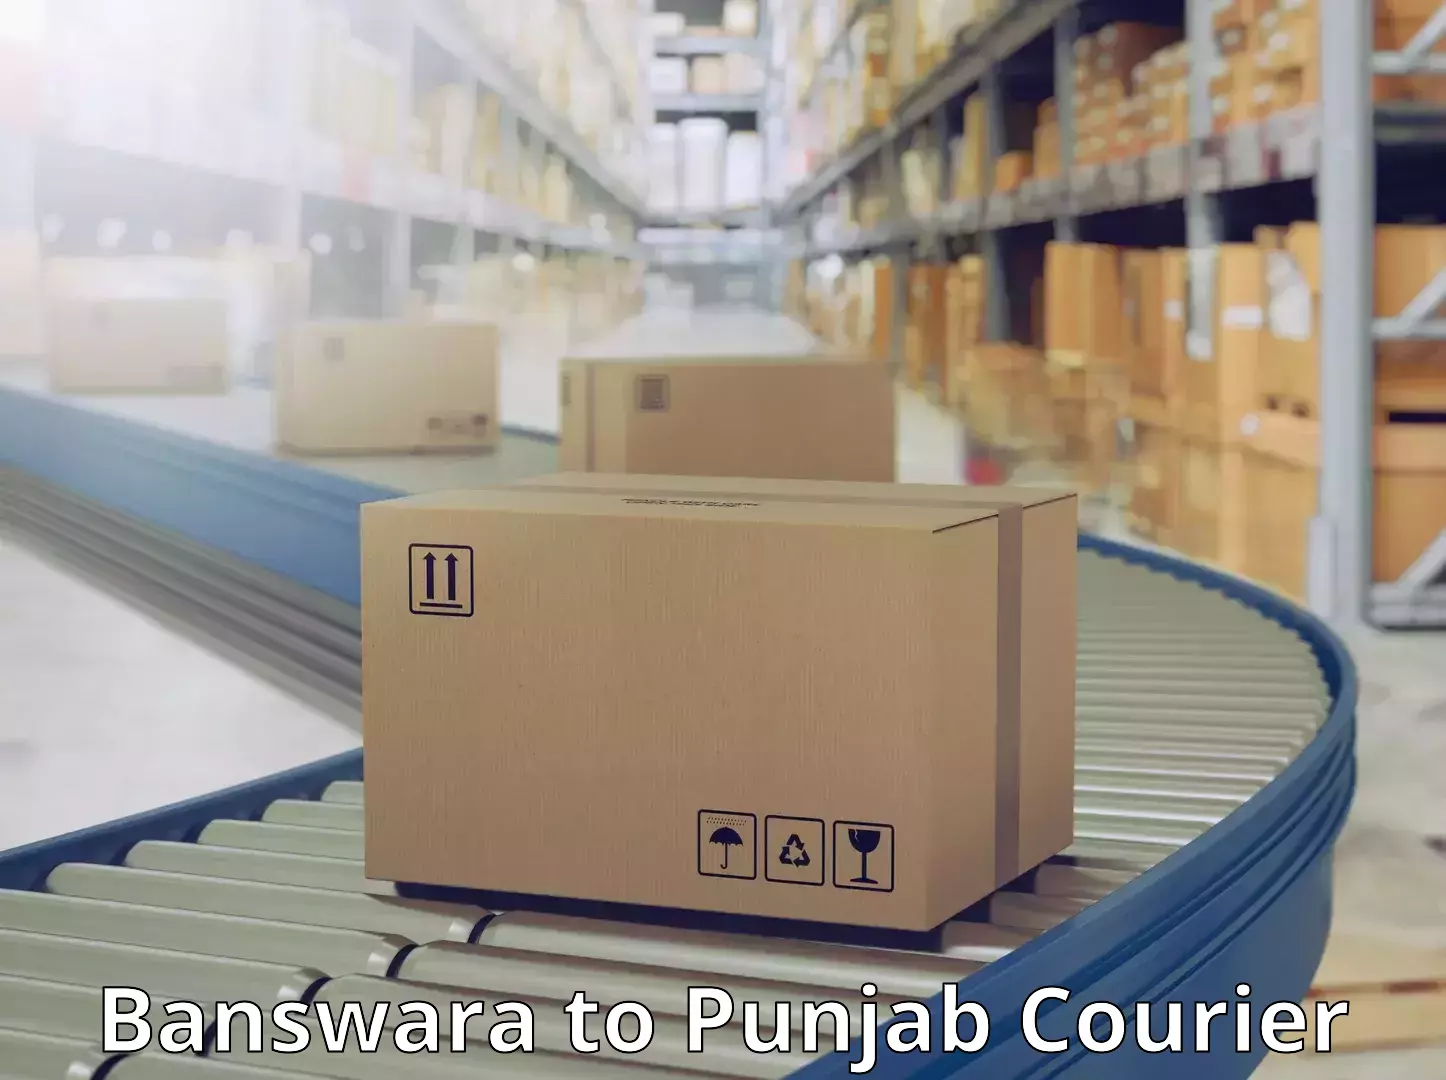 Affordable parcel service Banswara to Batala